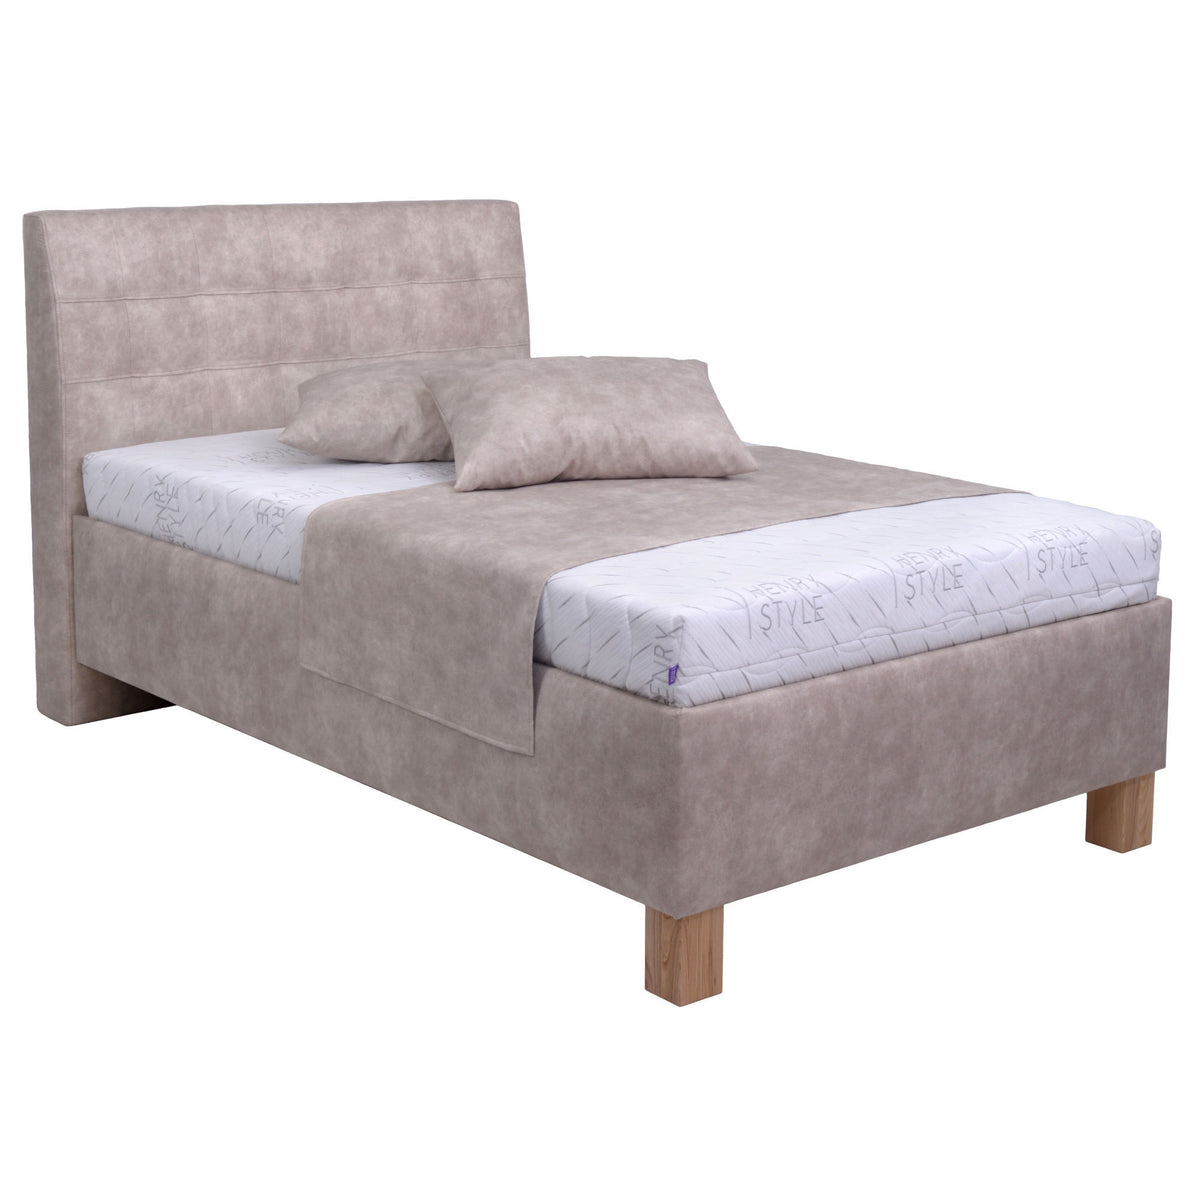 Čalouněná postel Victoria 90x200, béžová, včetně matrace